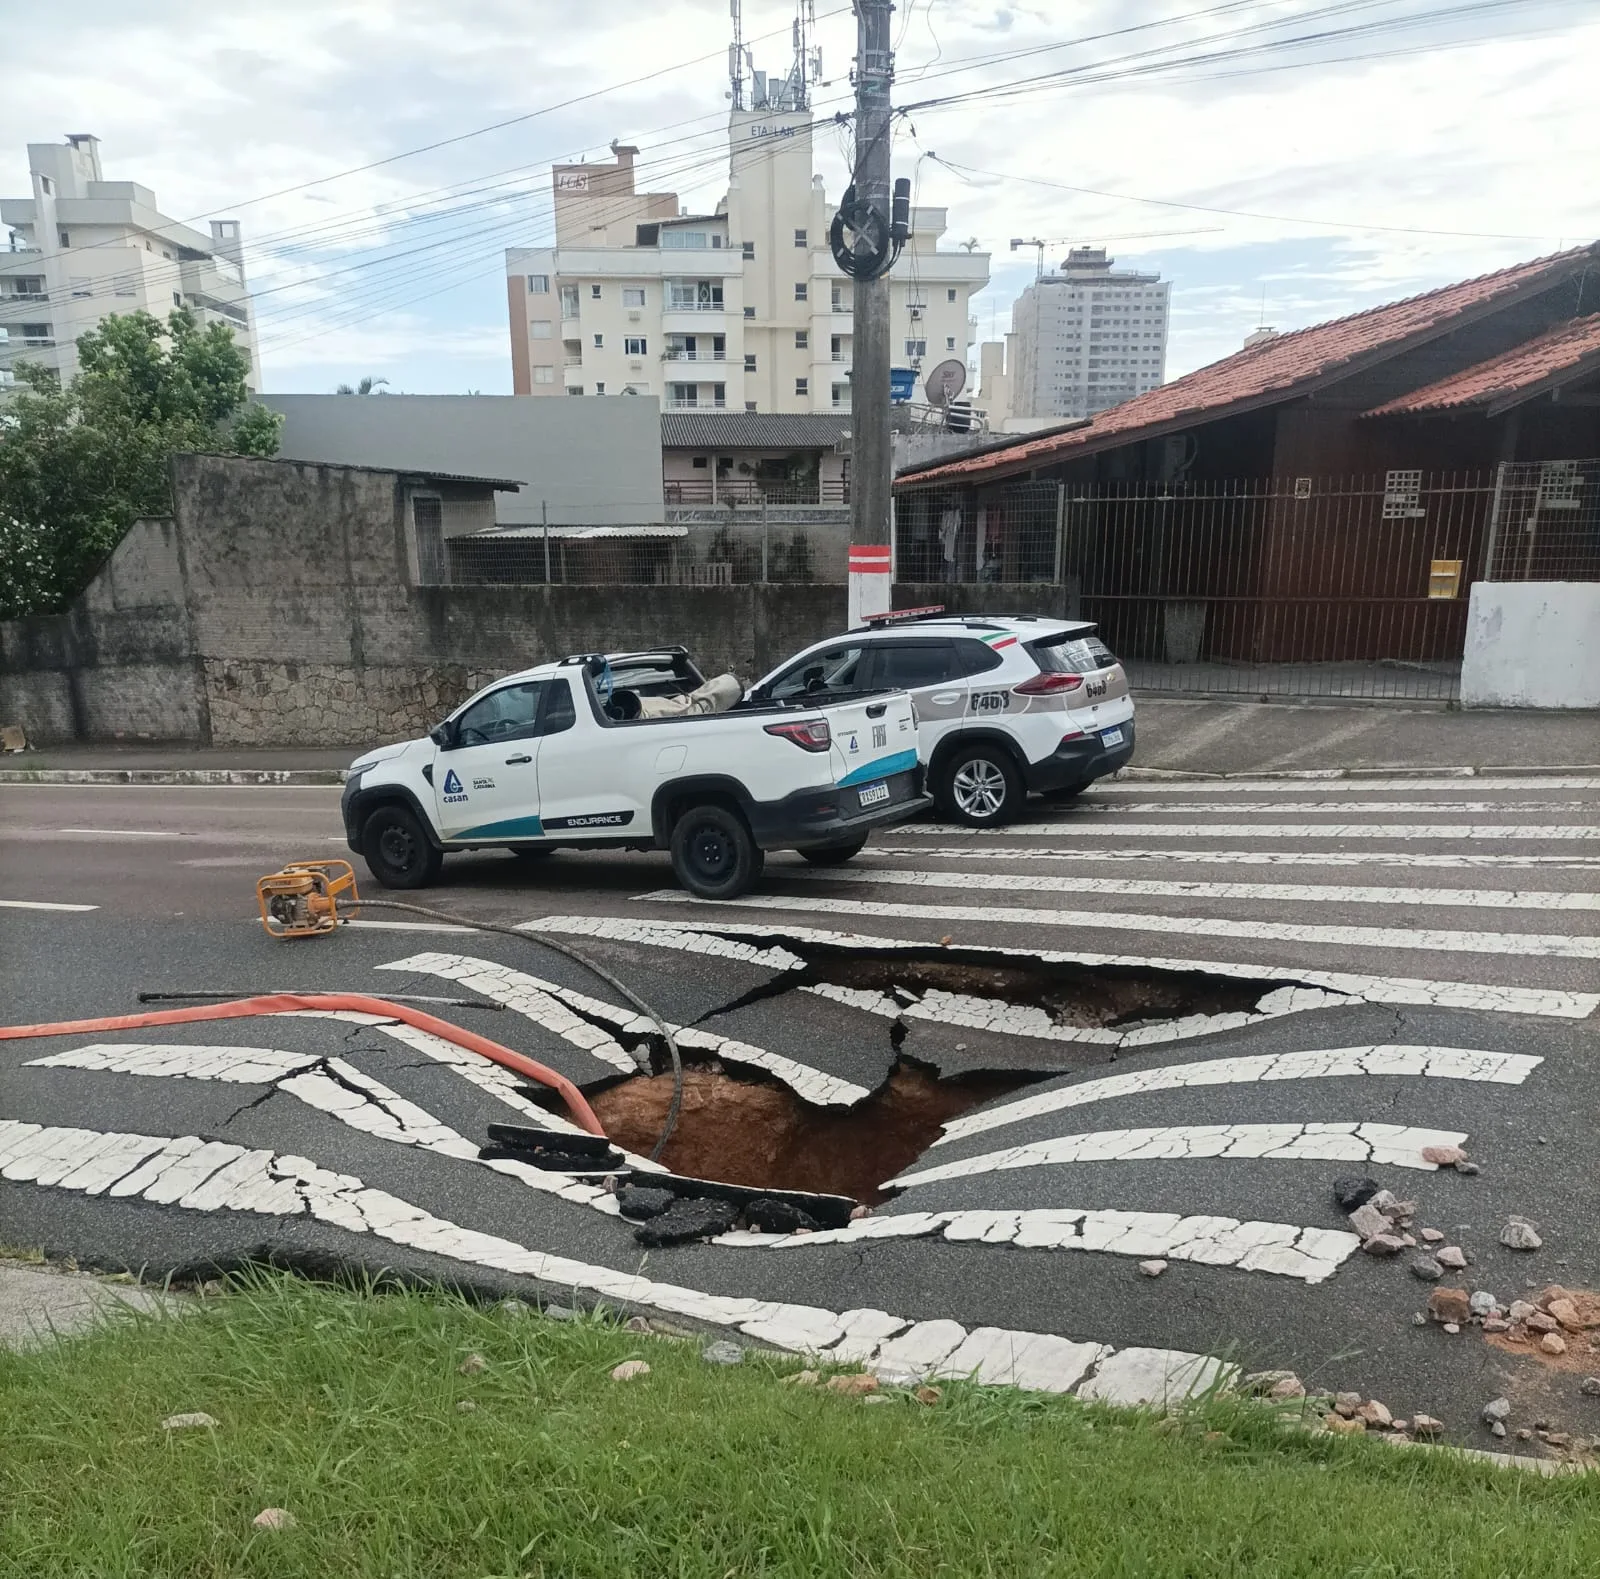 Foto: Divulgação 